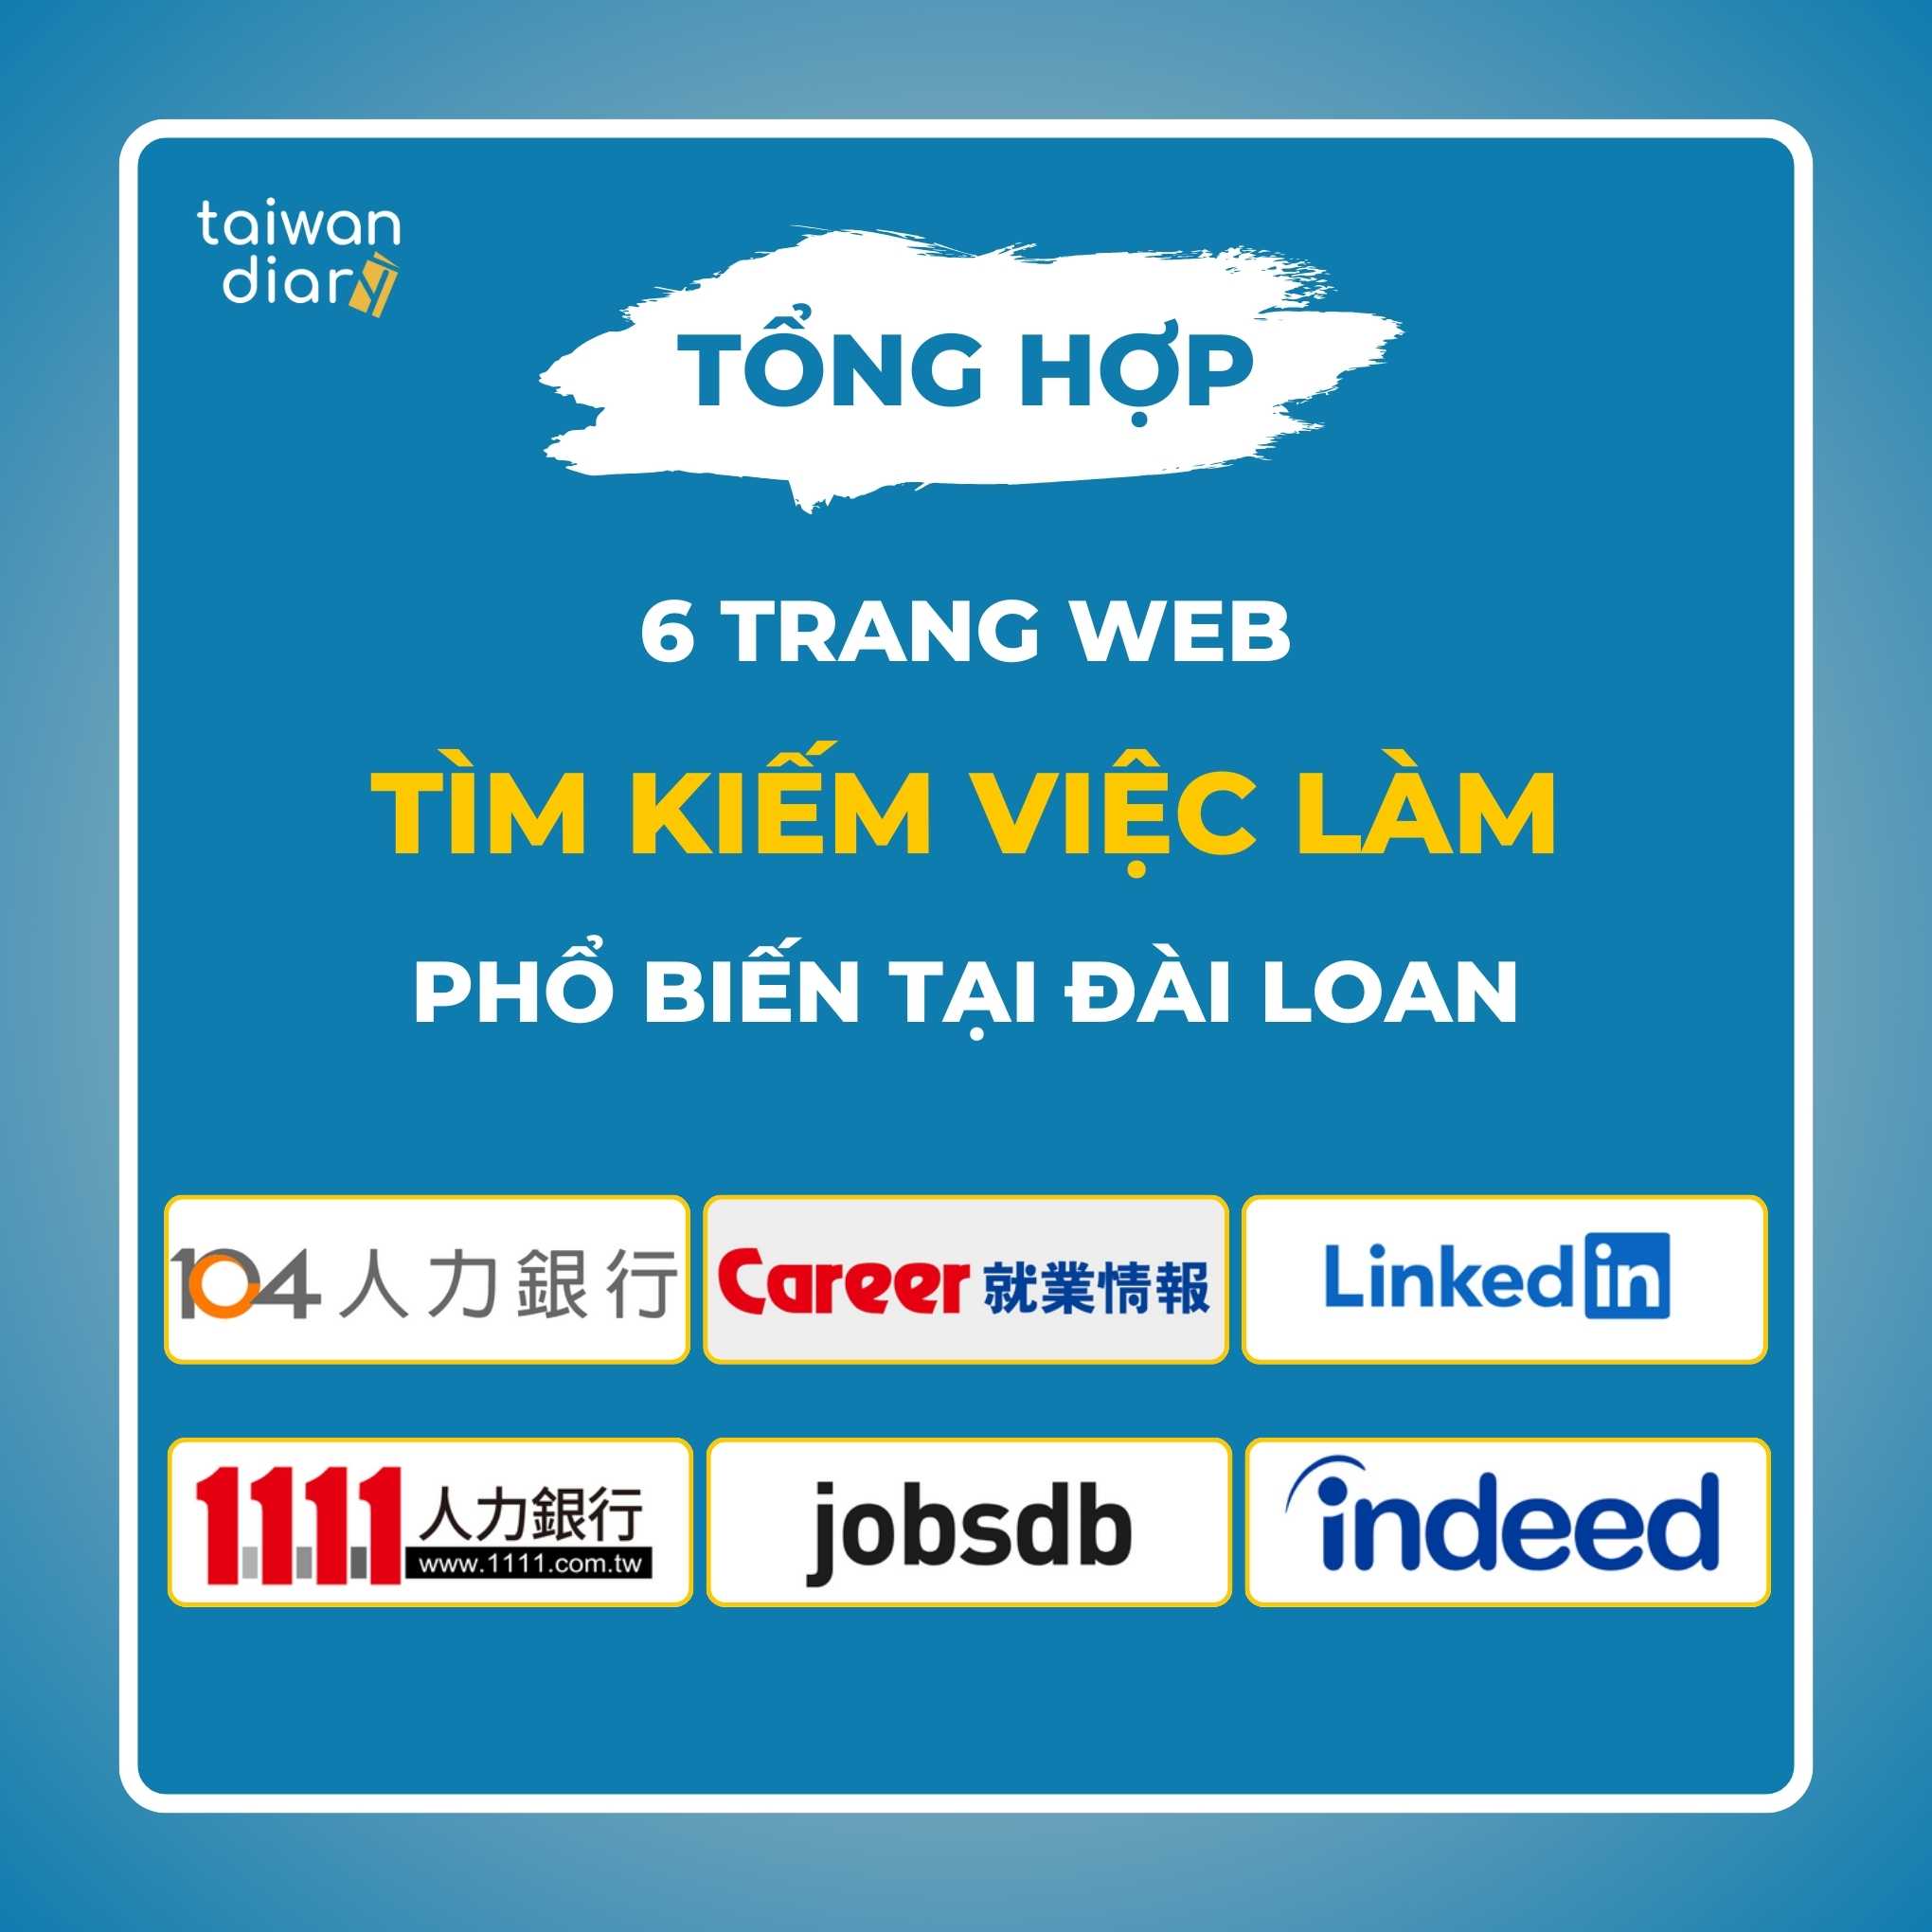 tong hop 6 trang web tim kiem viec lam pho bien tai dai loan